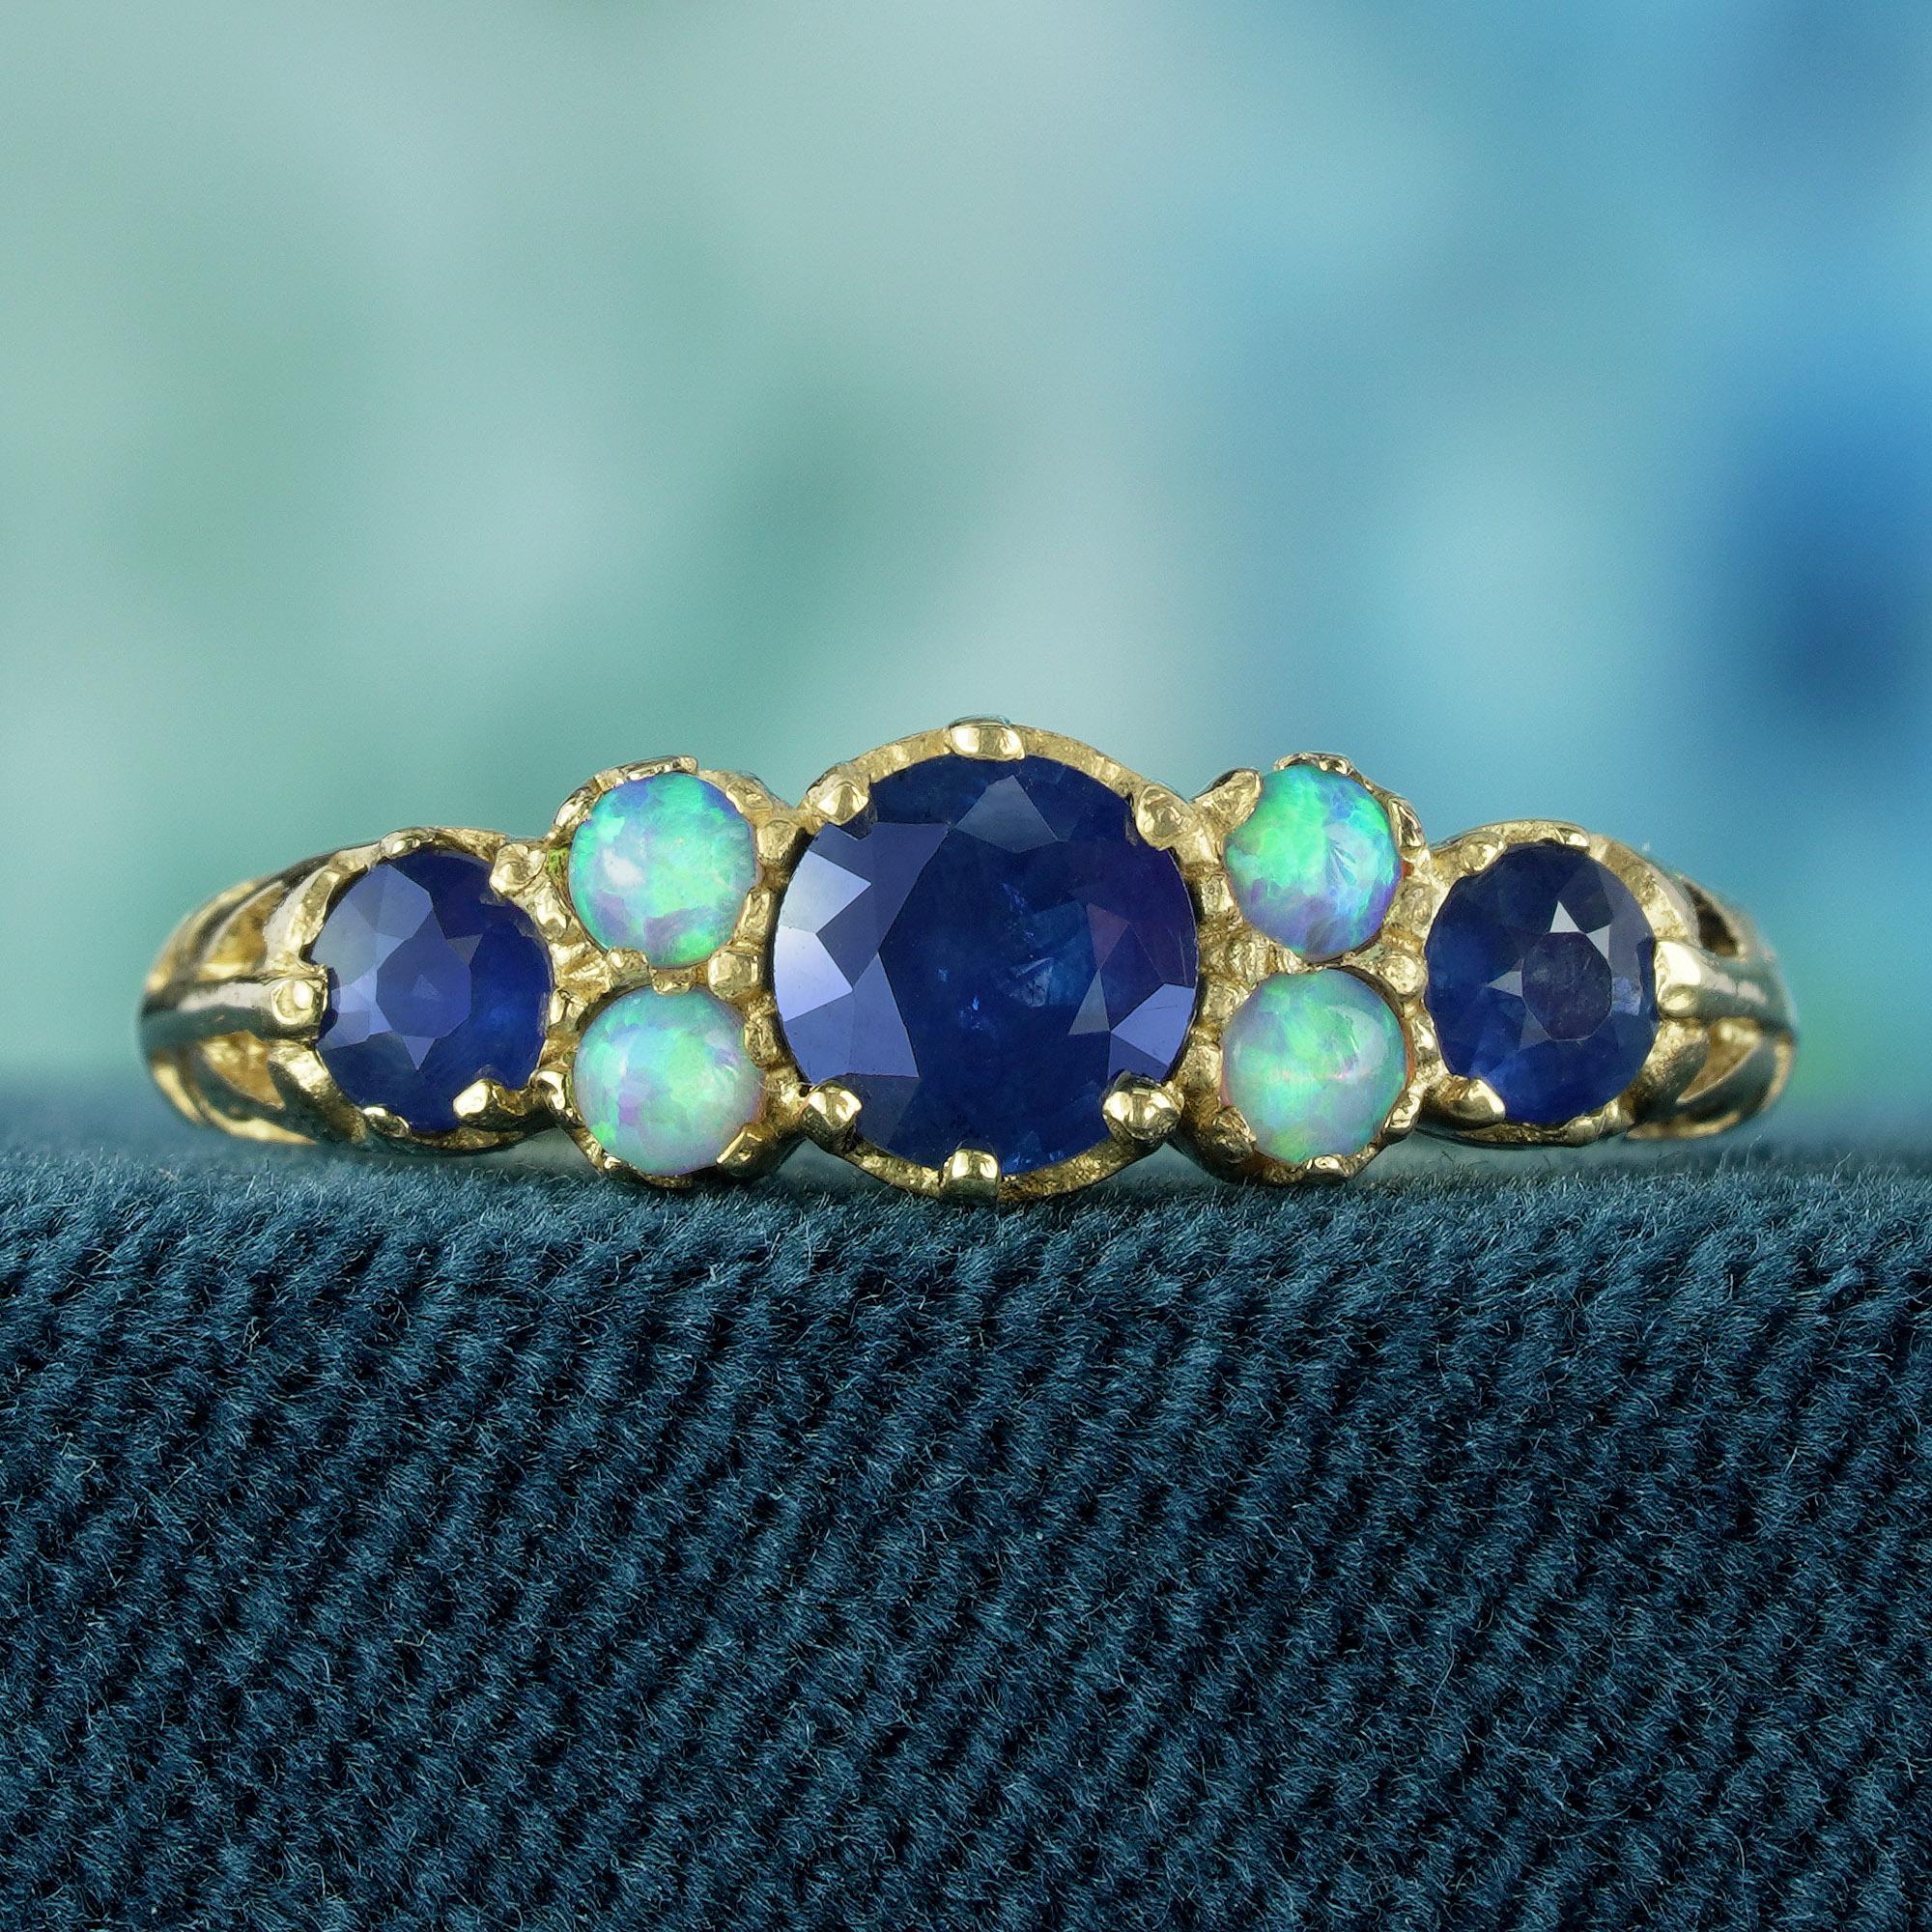 Im Mittelpunkt der Aufmerksamkeit stehen drei faszinierende natürliche blaue Saphire mit rundem Facettenschliff, die eine fesselnde Brillanz garantieren und Ihre Hand in den Mittelpunkt der Aufmerksamkeit rücken. Zarte weiße Opalakzente flankieren